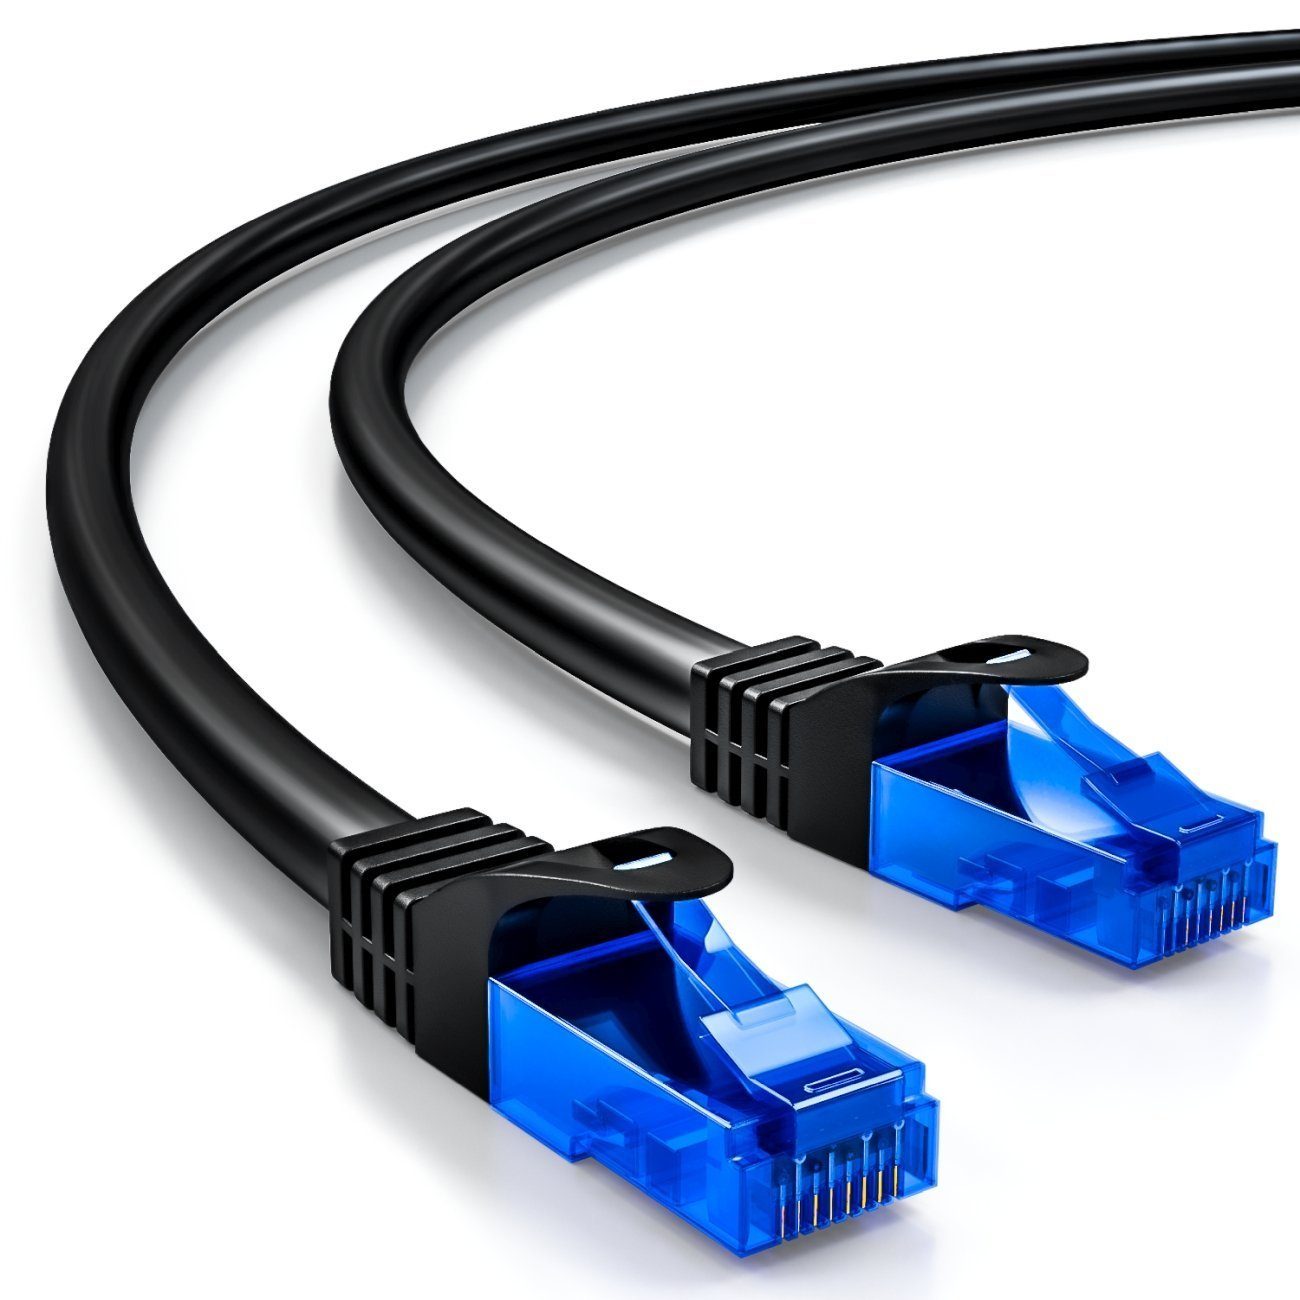 deleyCON deleyCON 30m CAT6 Patchkabel Netzwerkkabel Ethernet LAN DSL Kabel LAN-Kabel